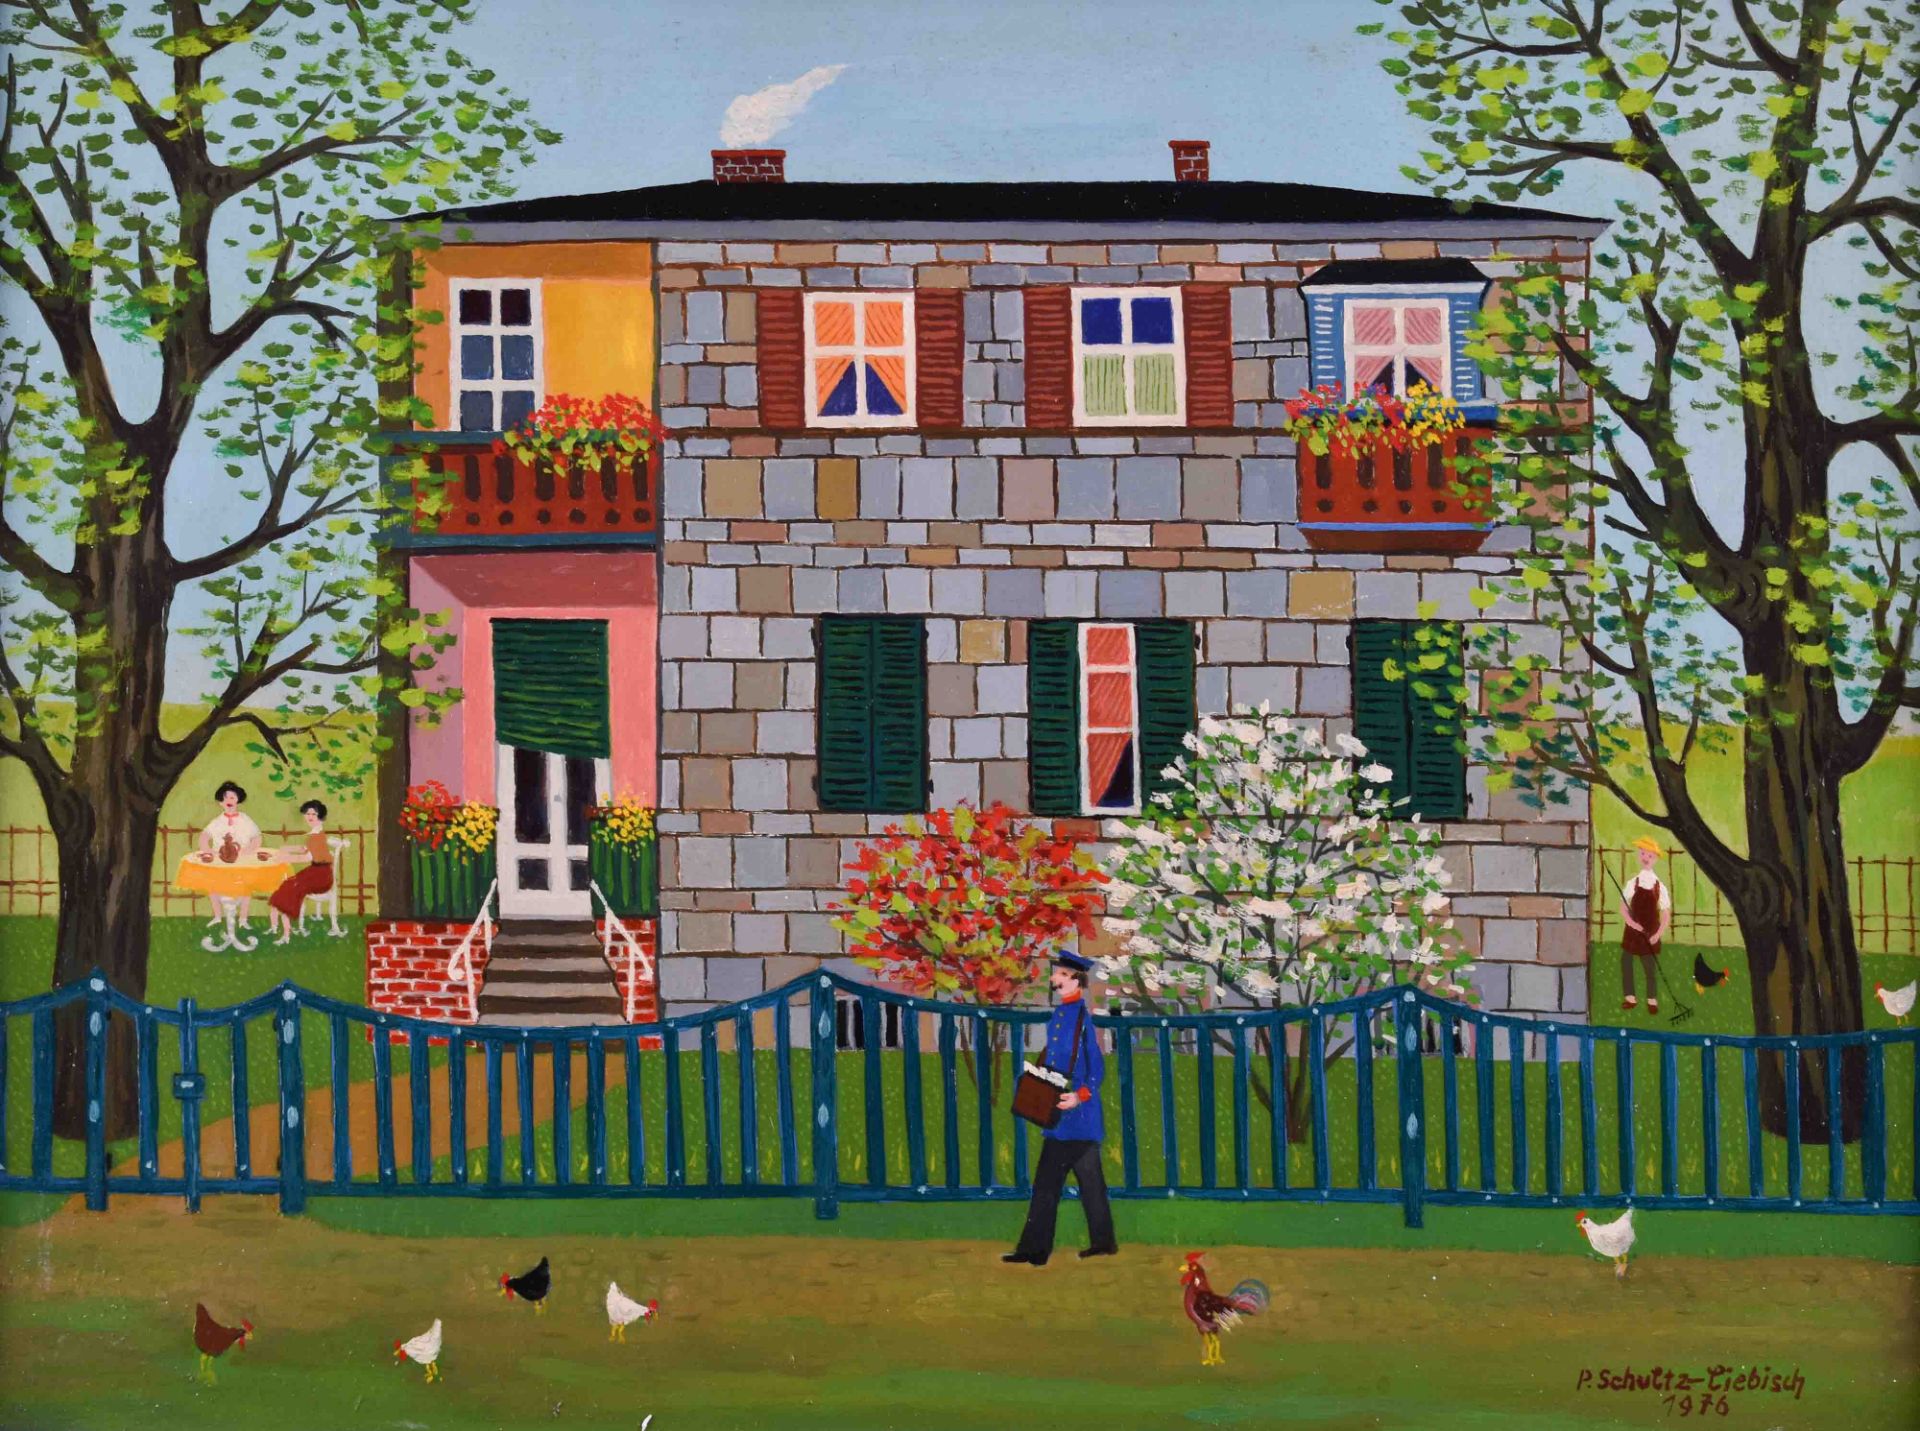 Paul SCHULTZ-LIEBISCH (1905-1996)"Gästehaus in Pankow"painting oil / hardboard, 33 cm x 43.5 cm,